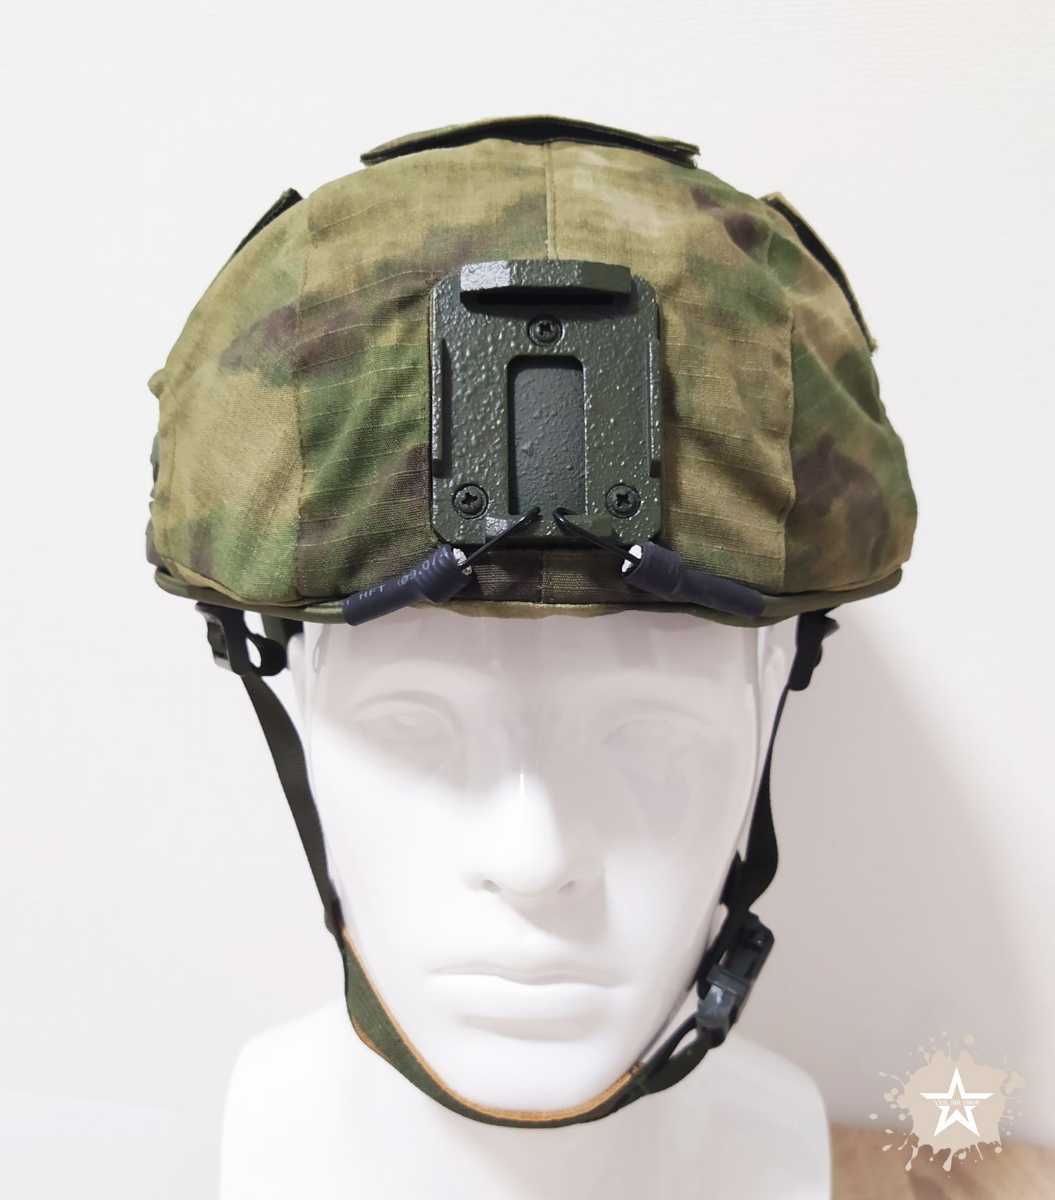 ロシア軍 特殊部隊 LSHZ1+ ヘルメット ハイカット カバー付き 新品未使用 MOX迷彩